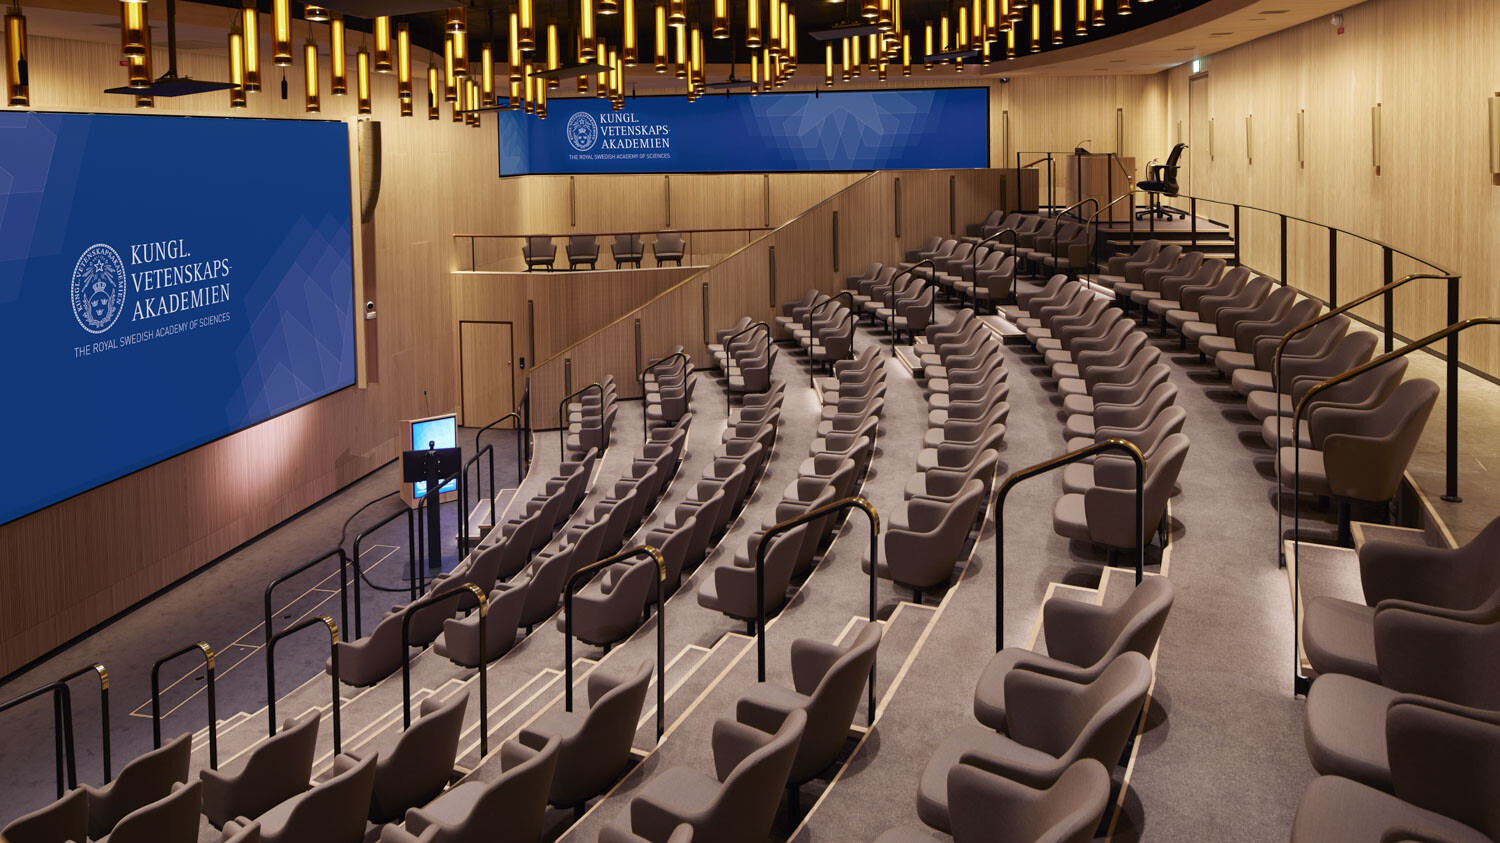 In diesem Saal, in welchem die Nobelpreisträger ihre Arbeit präsentieren, herrscht dank LIGNO® Akustik light - Paneelen eine optimale Akustik.